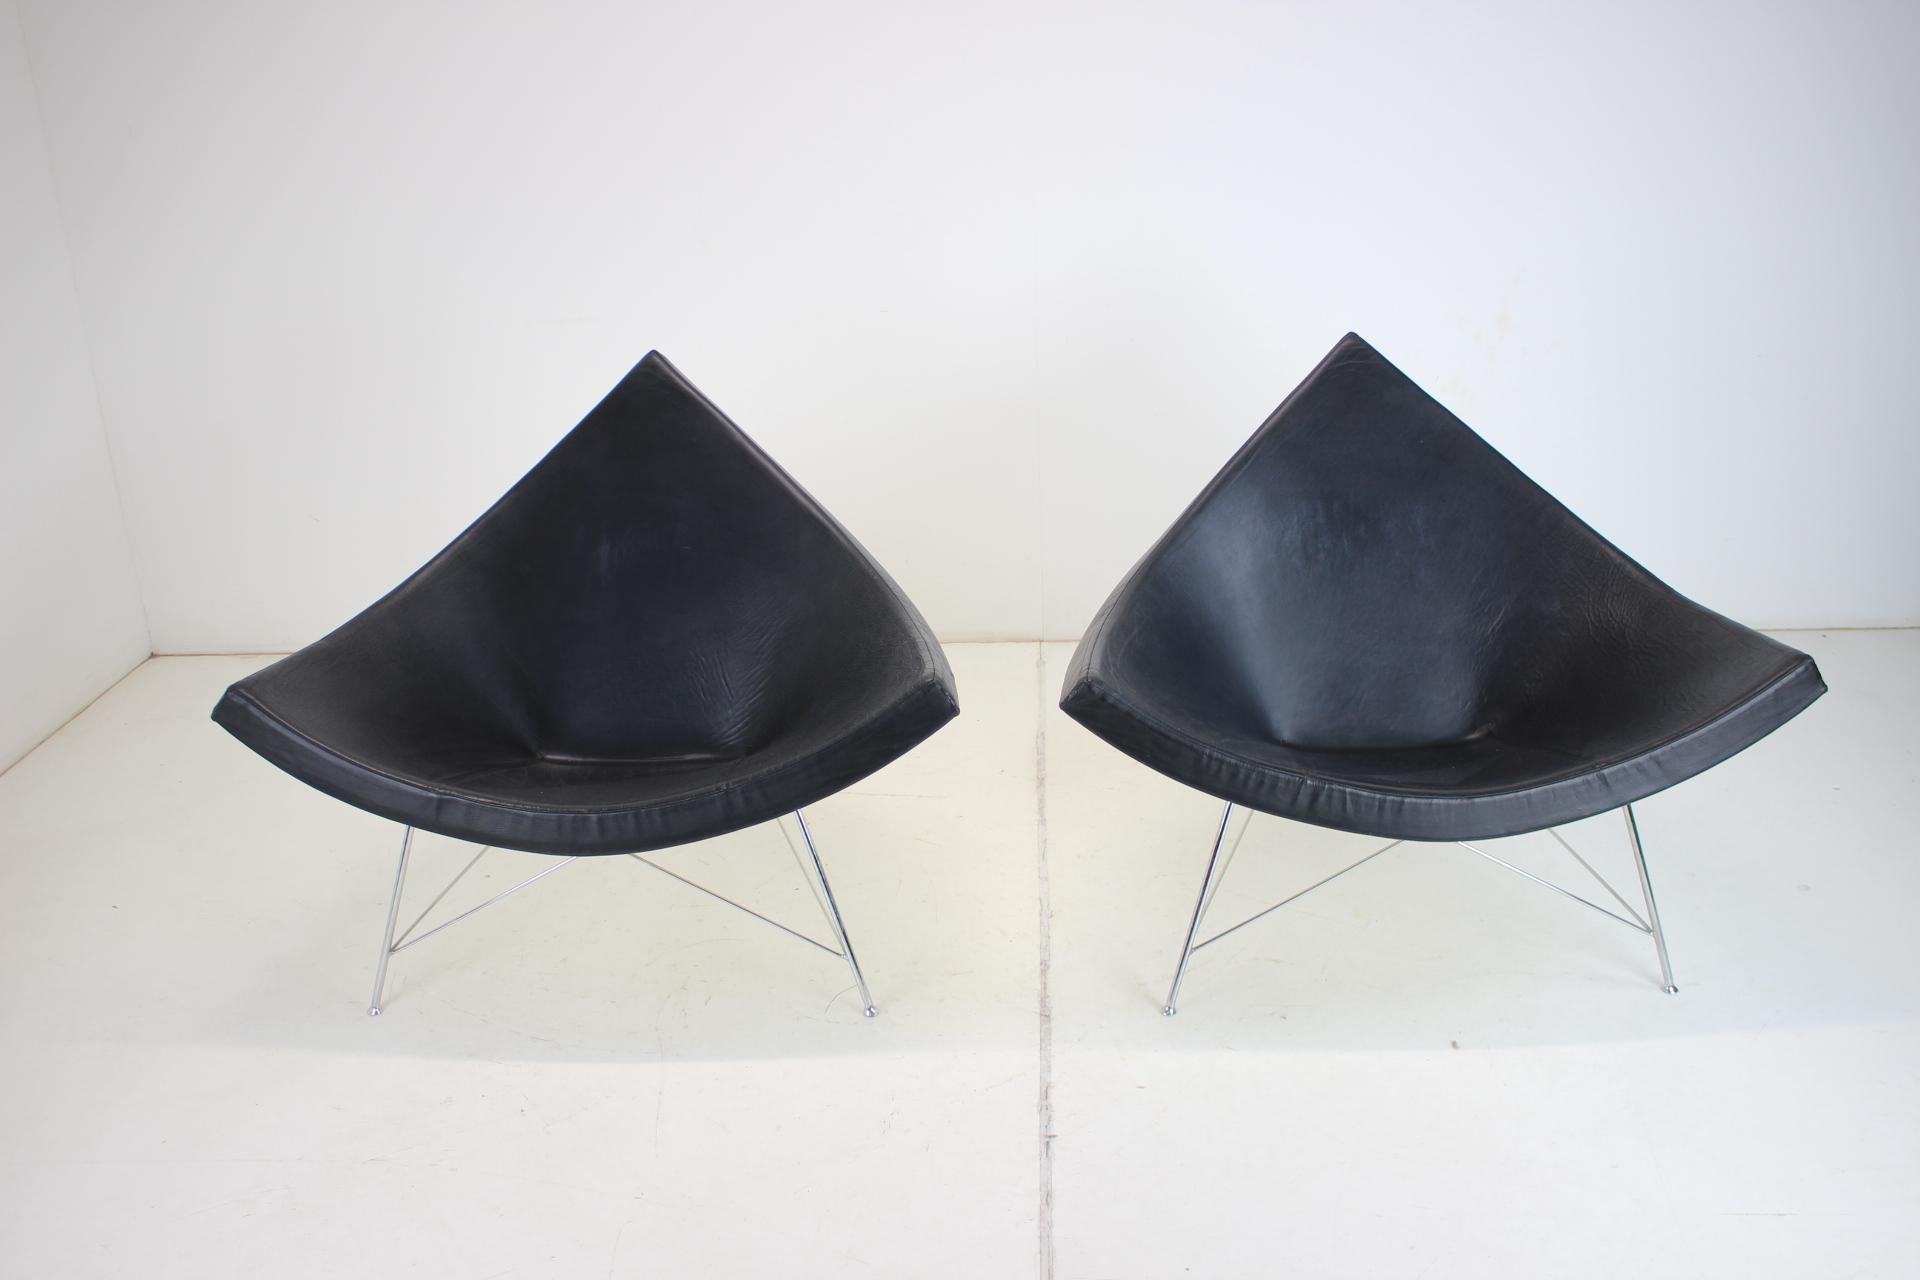 Coconut Lounge Chair, entworfen von George Nelson für Herman Miller, hergestellt von Vitra. Schwarzes Leder, weiße Schale und verchromte Beine, guter Originalzustand.
- Gekennzeichnet durch das Original Label
- Sehr komfortabel
- Kunstleder
- Hat